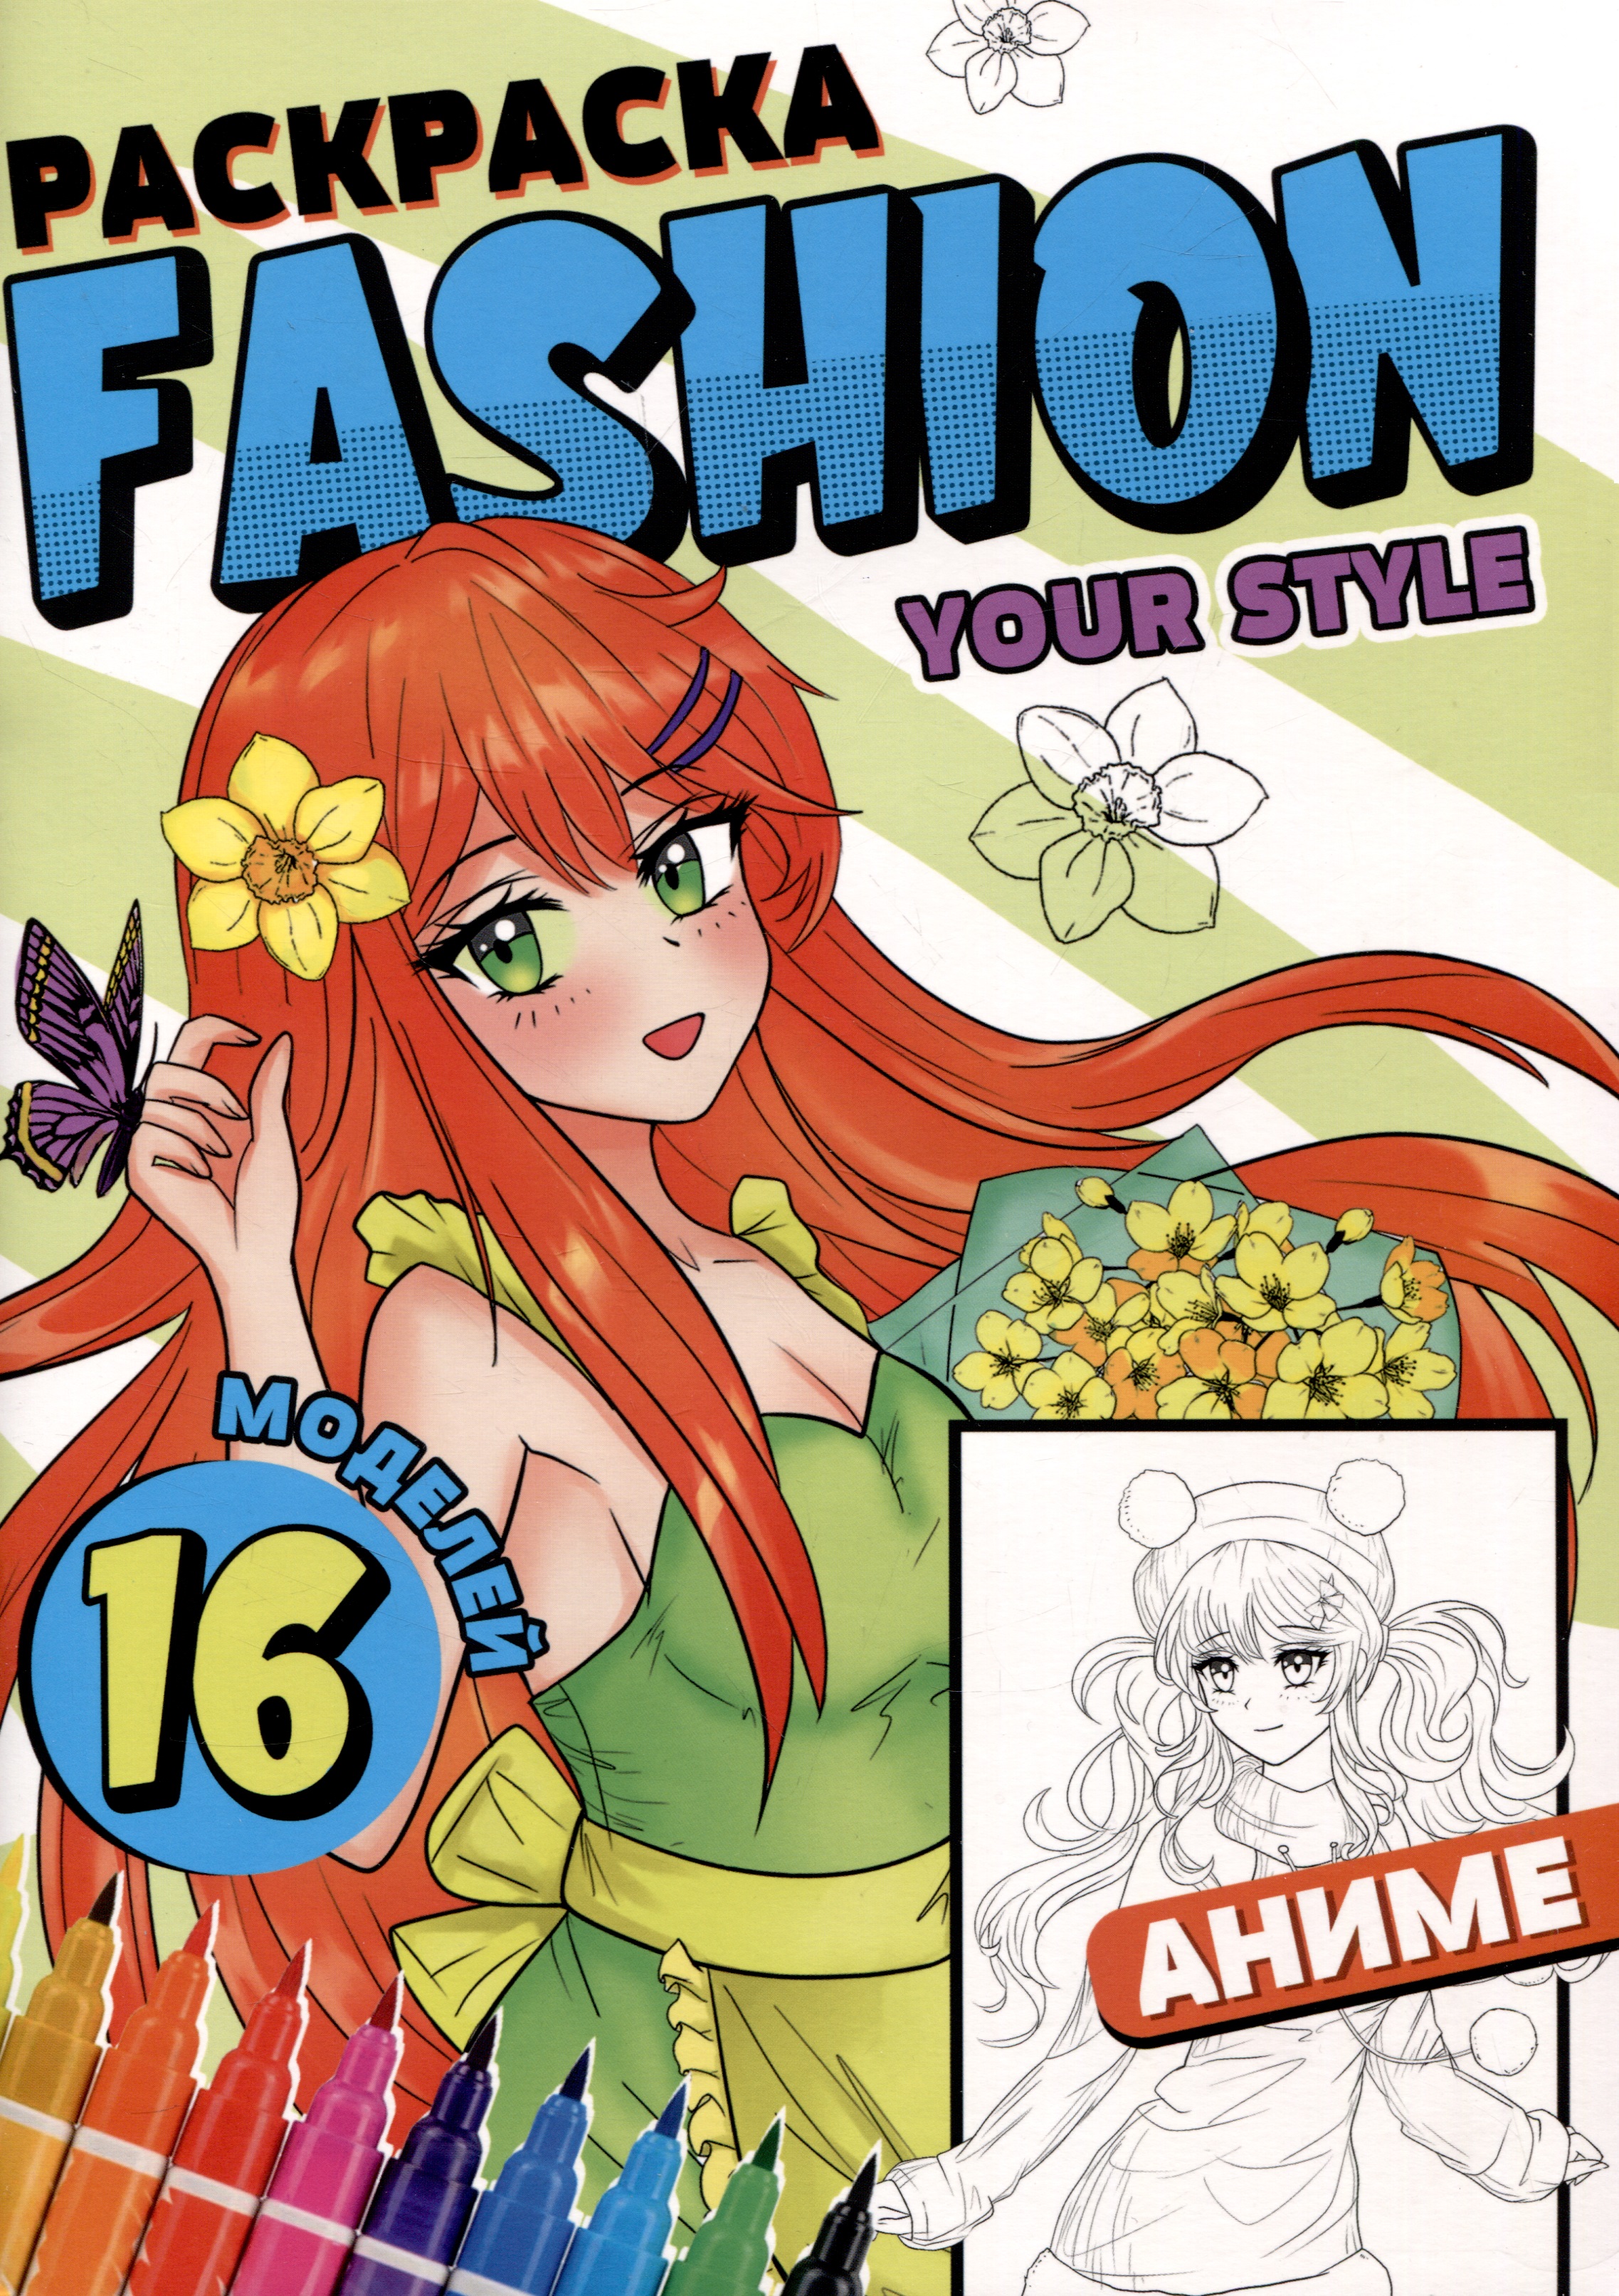 грецкая а раскраска fashion аниме girl style Раскраска Fashion Аниме. Your style